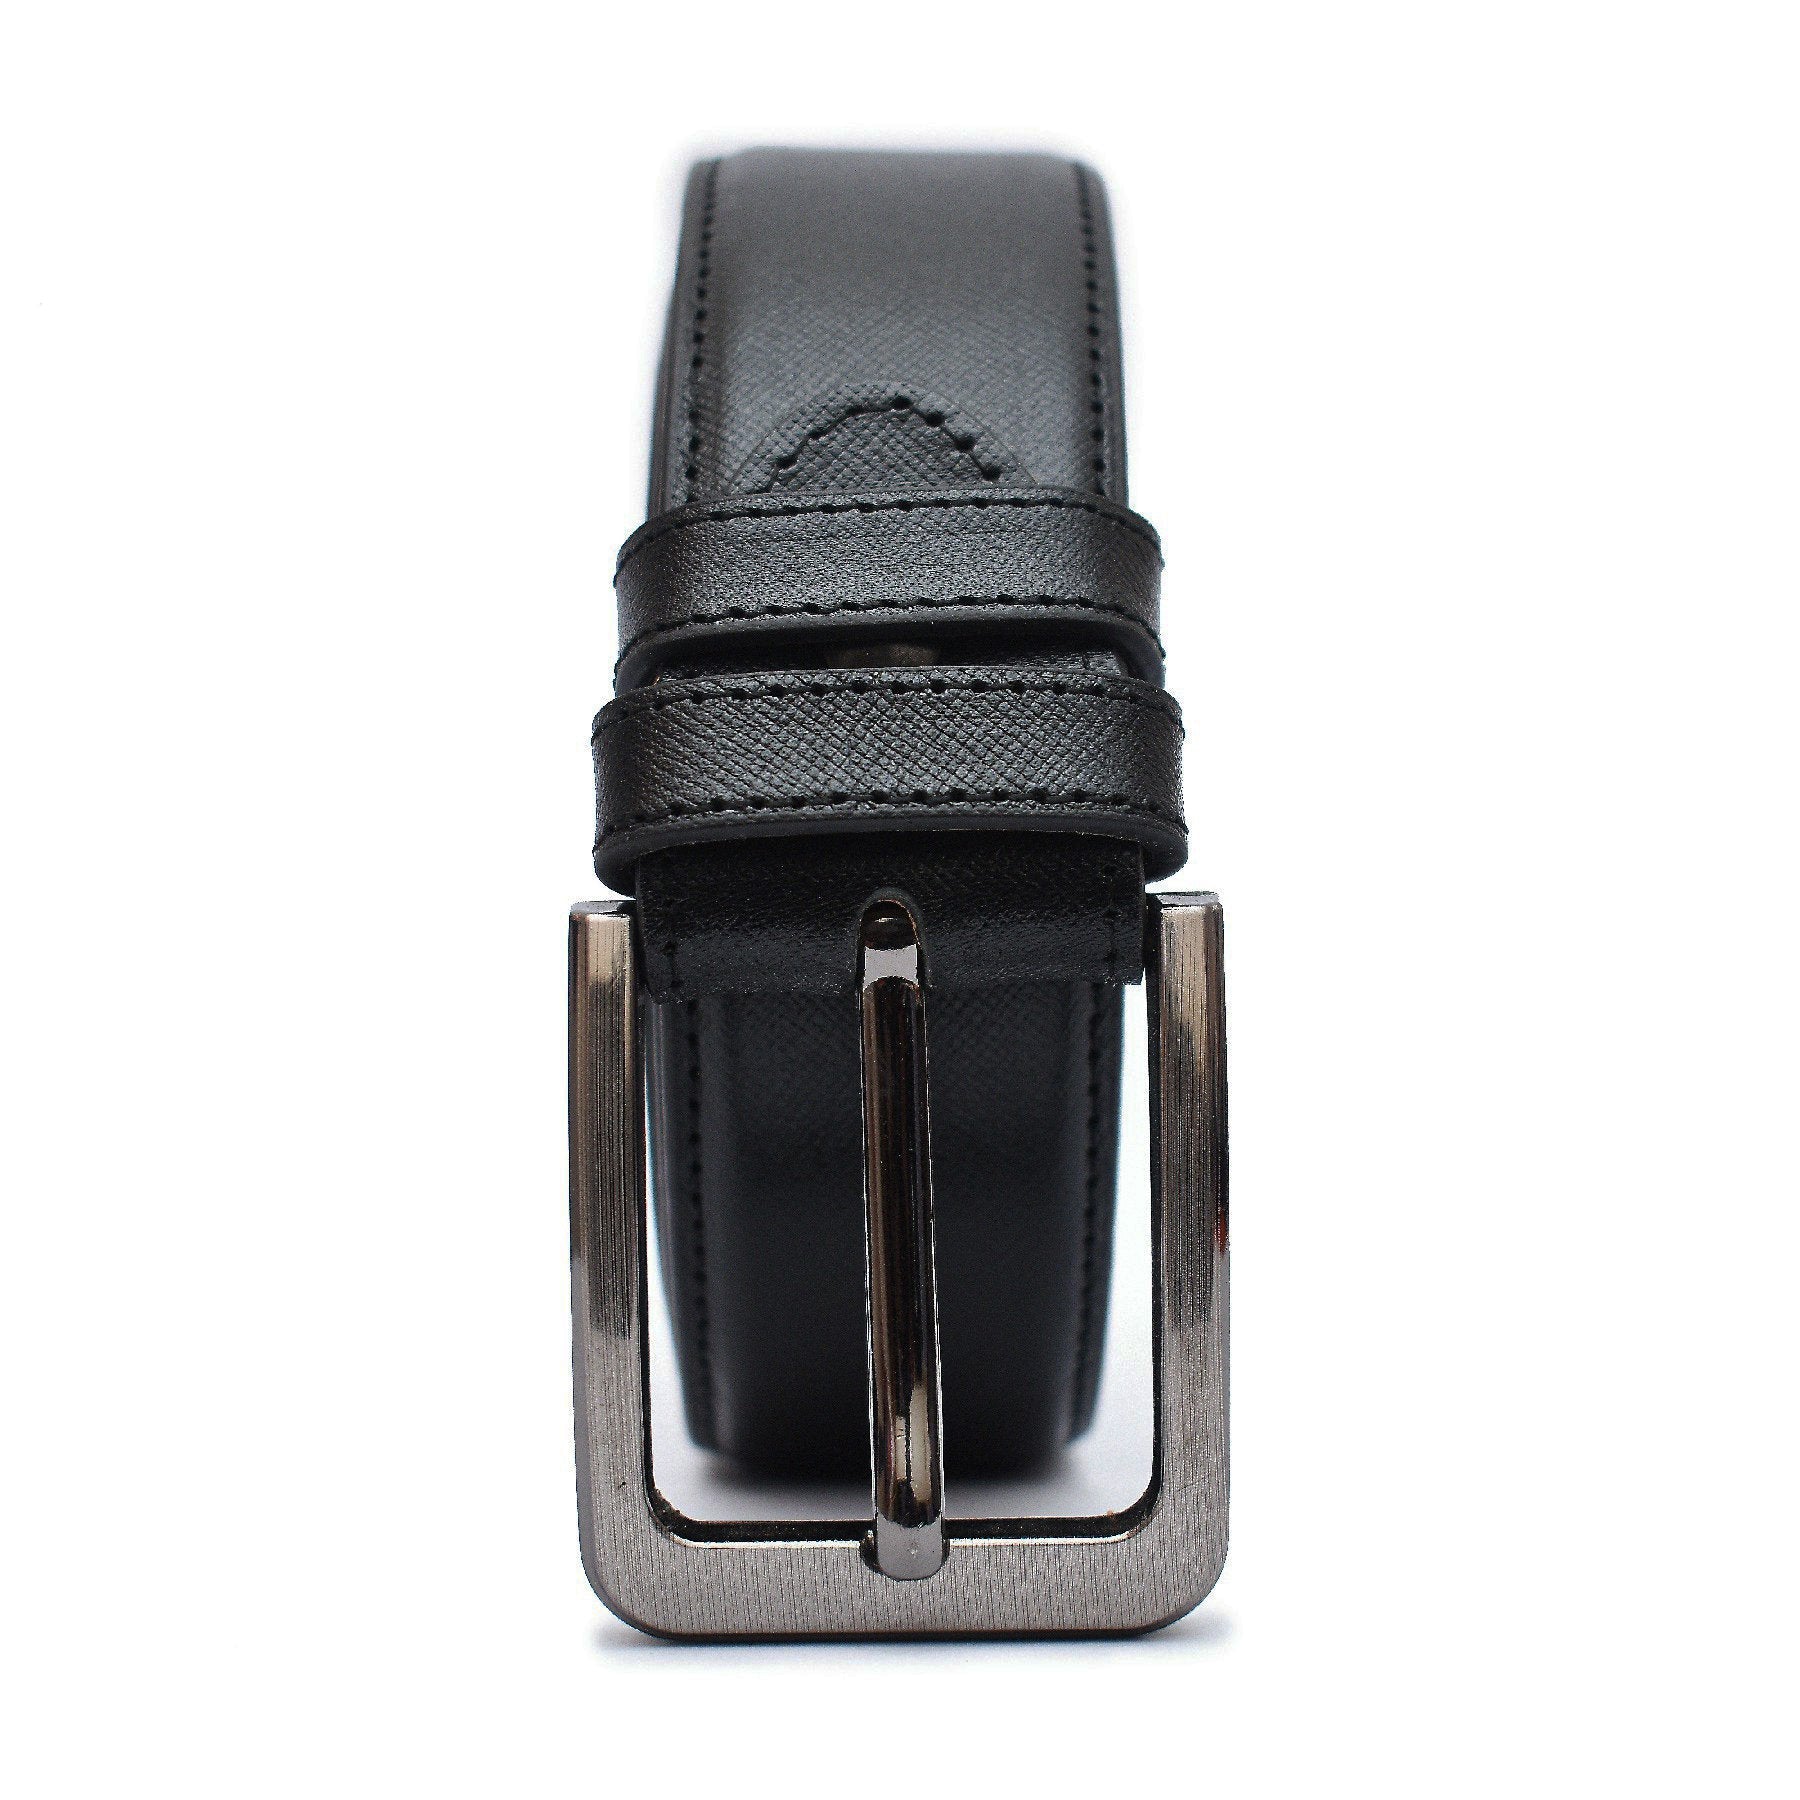 Zays Saffiano leather Belt for Men - (Black) ZAYSBL21